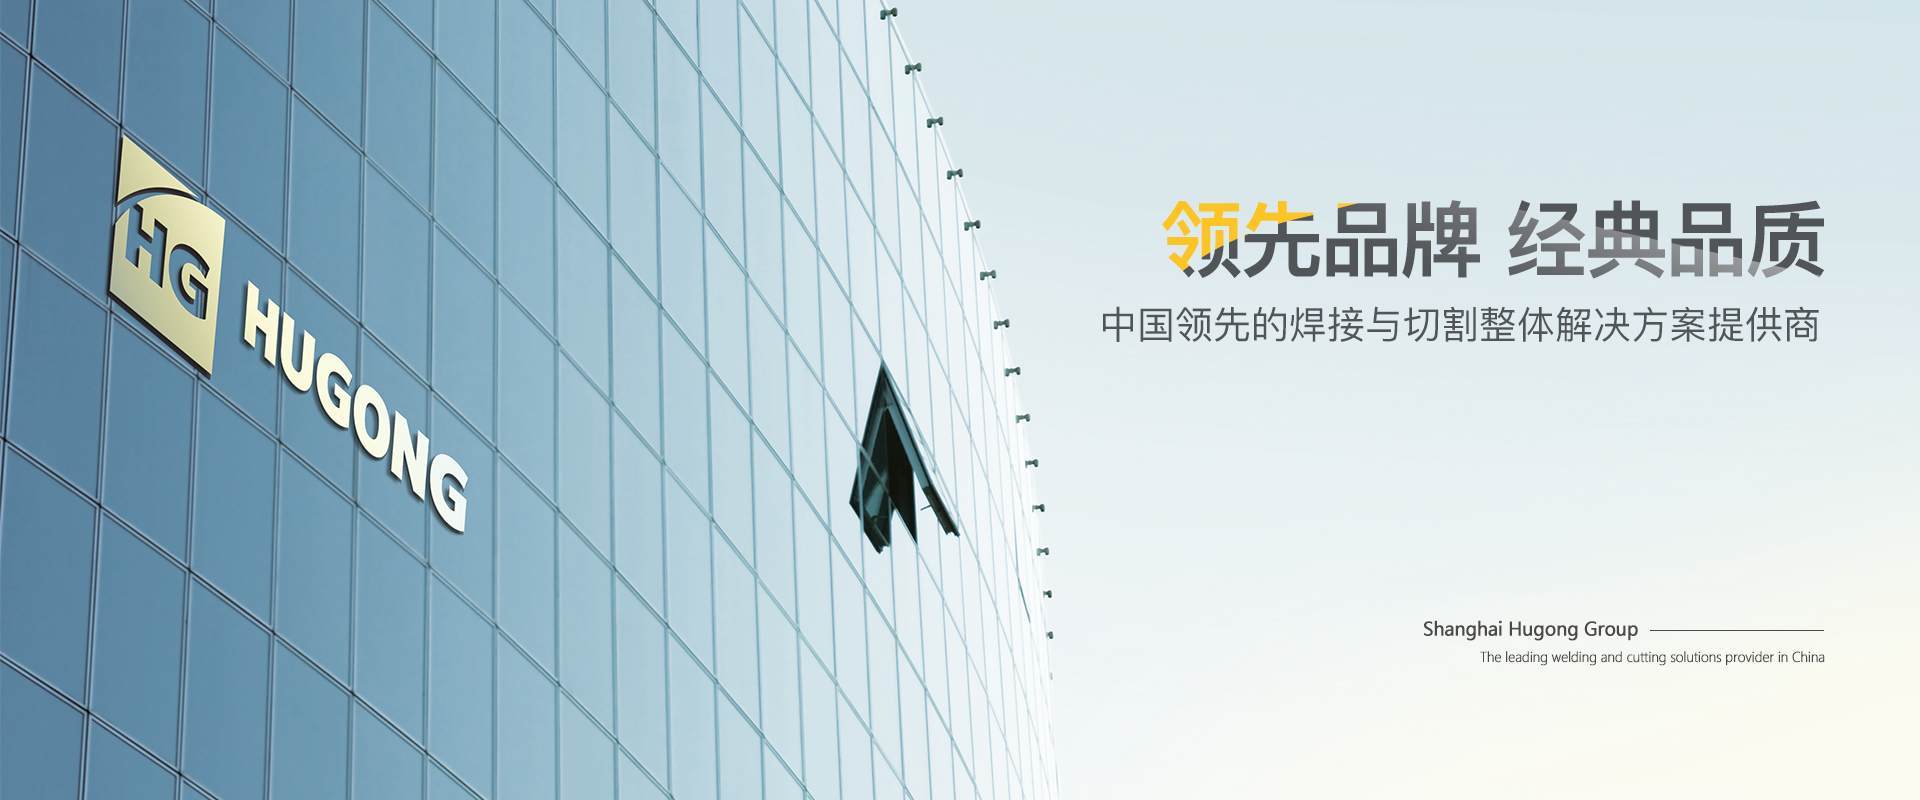 上海银河-中国领先的焊接与切割整体解决方案提供商